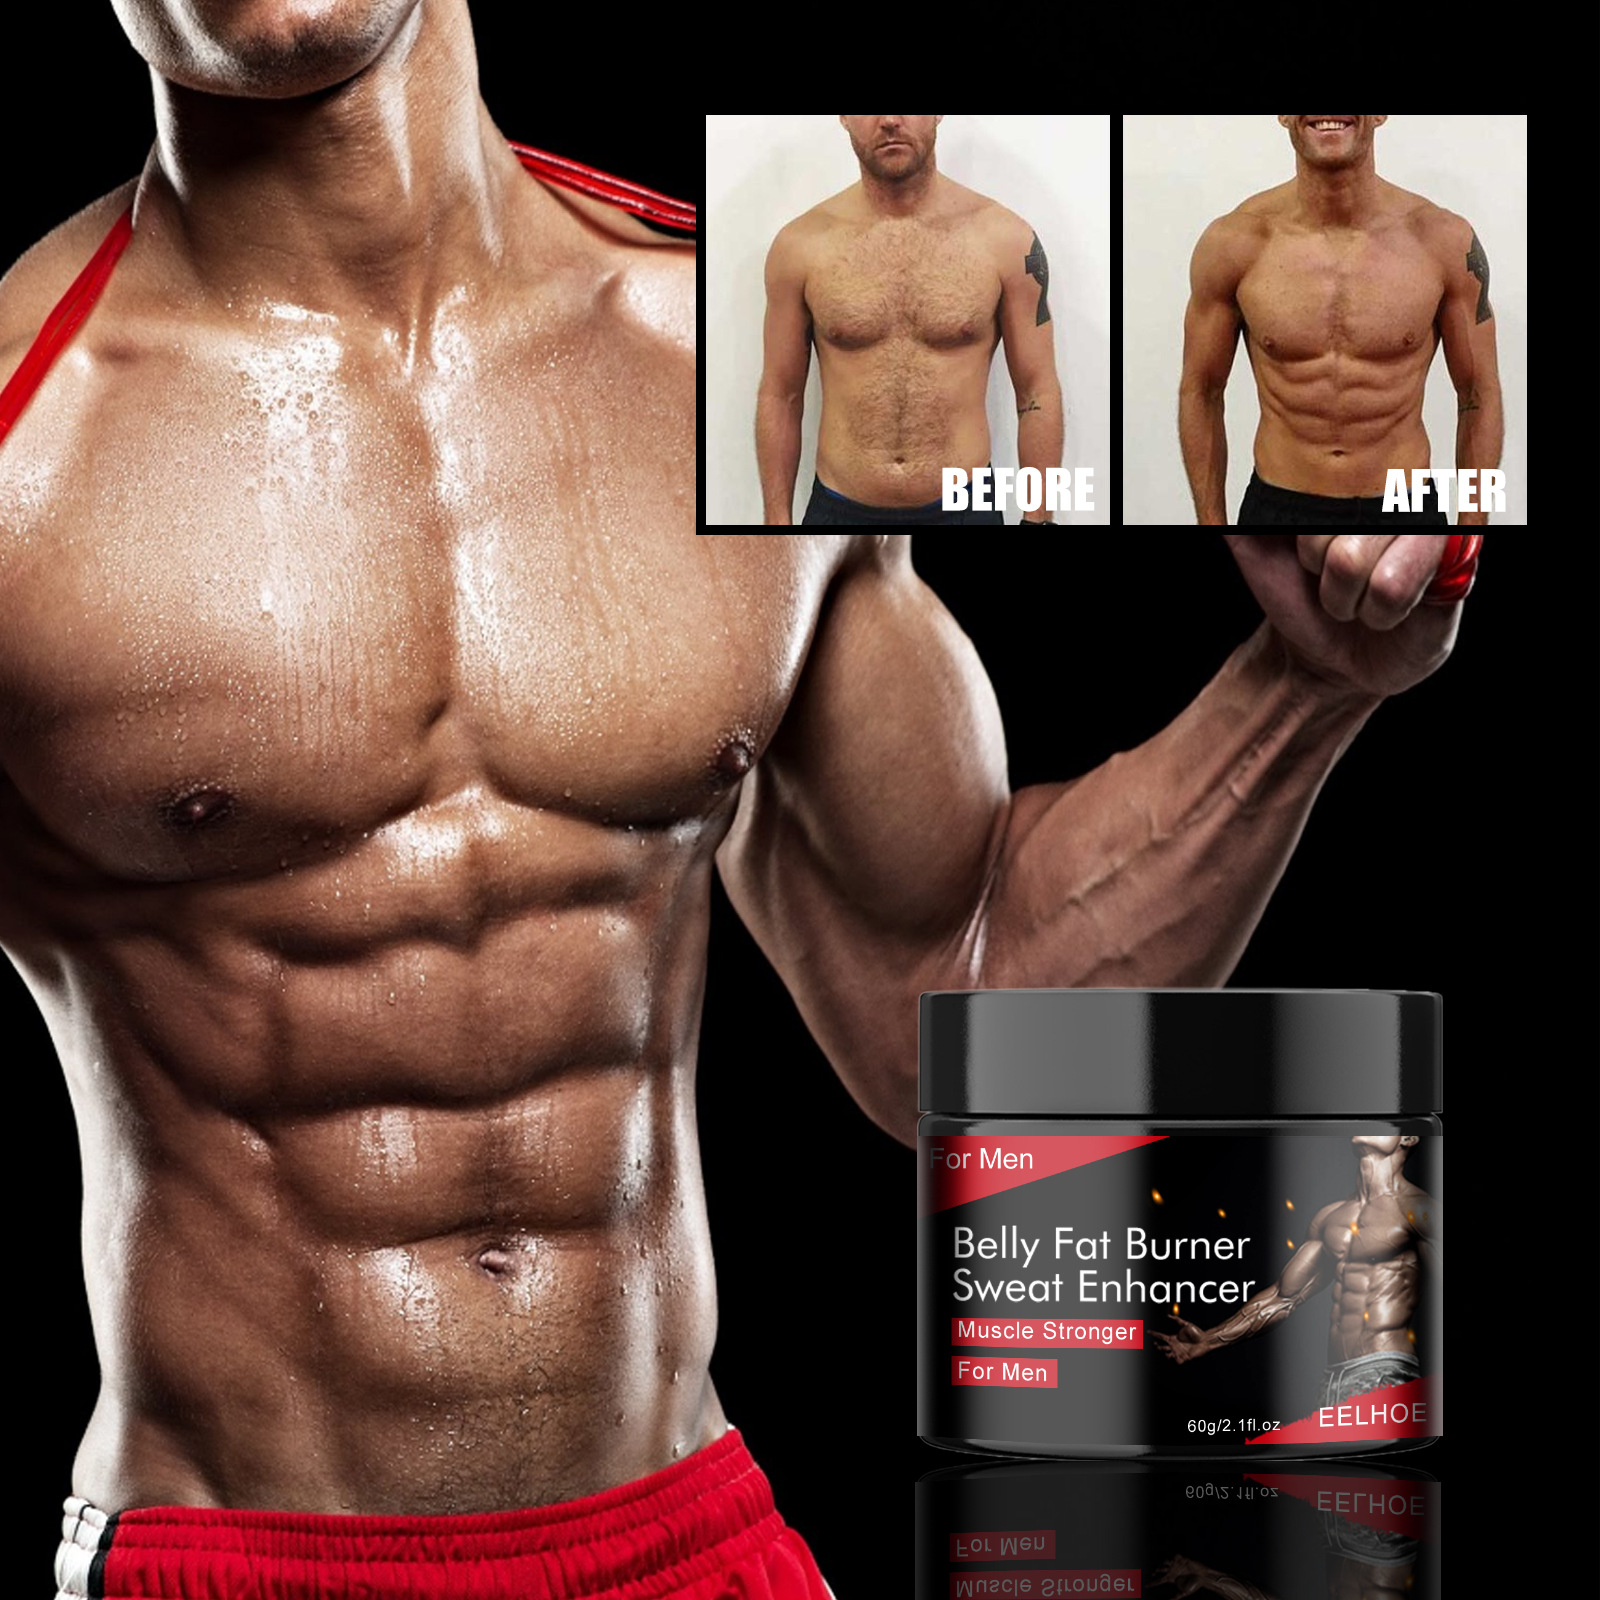 Belly Fat Burner Sweat Enhancer for Men